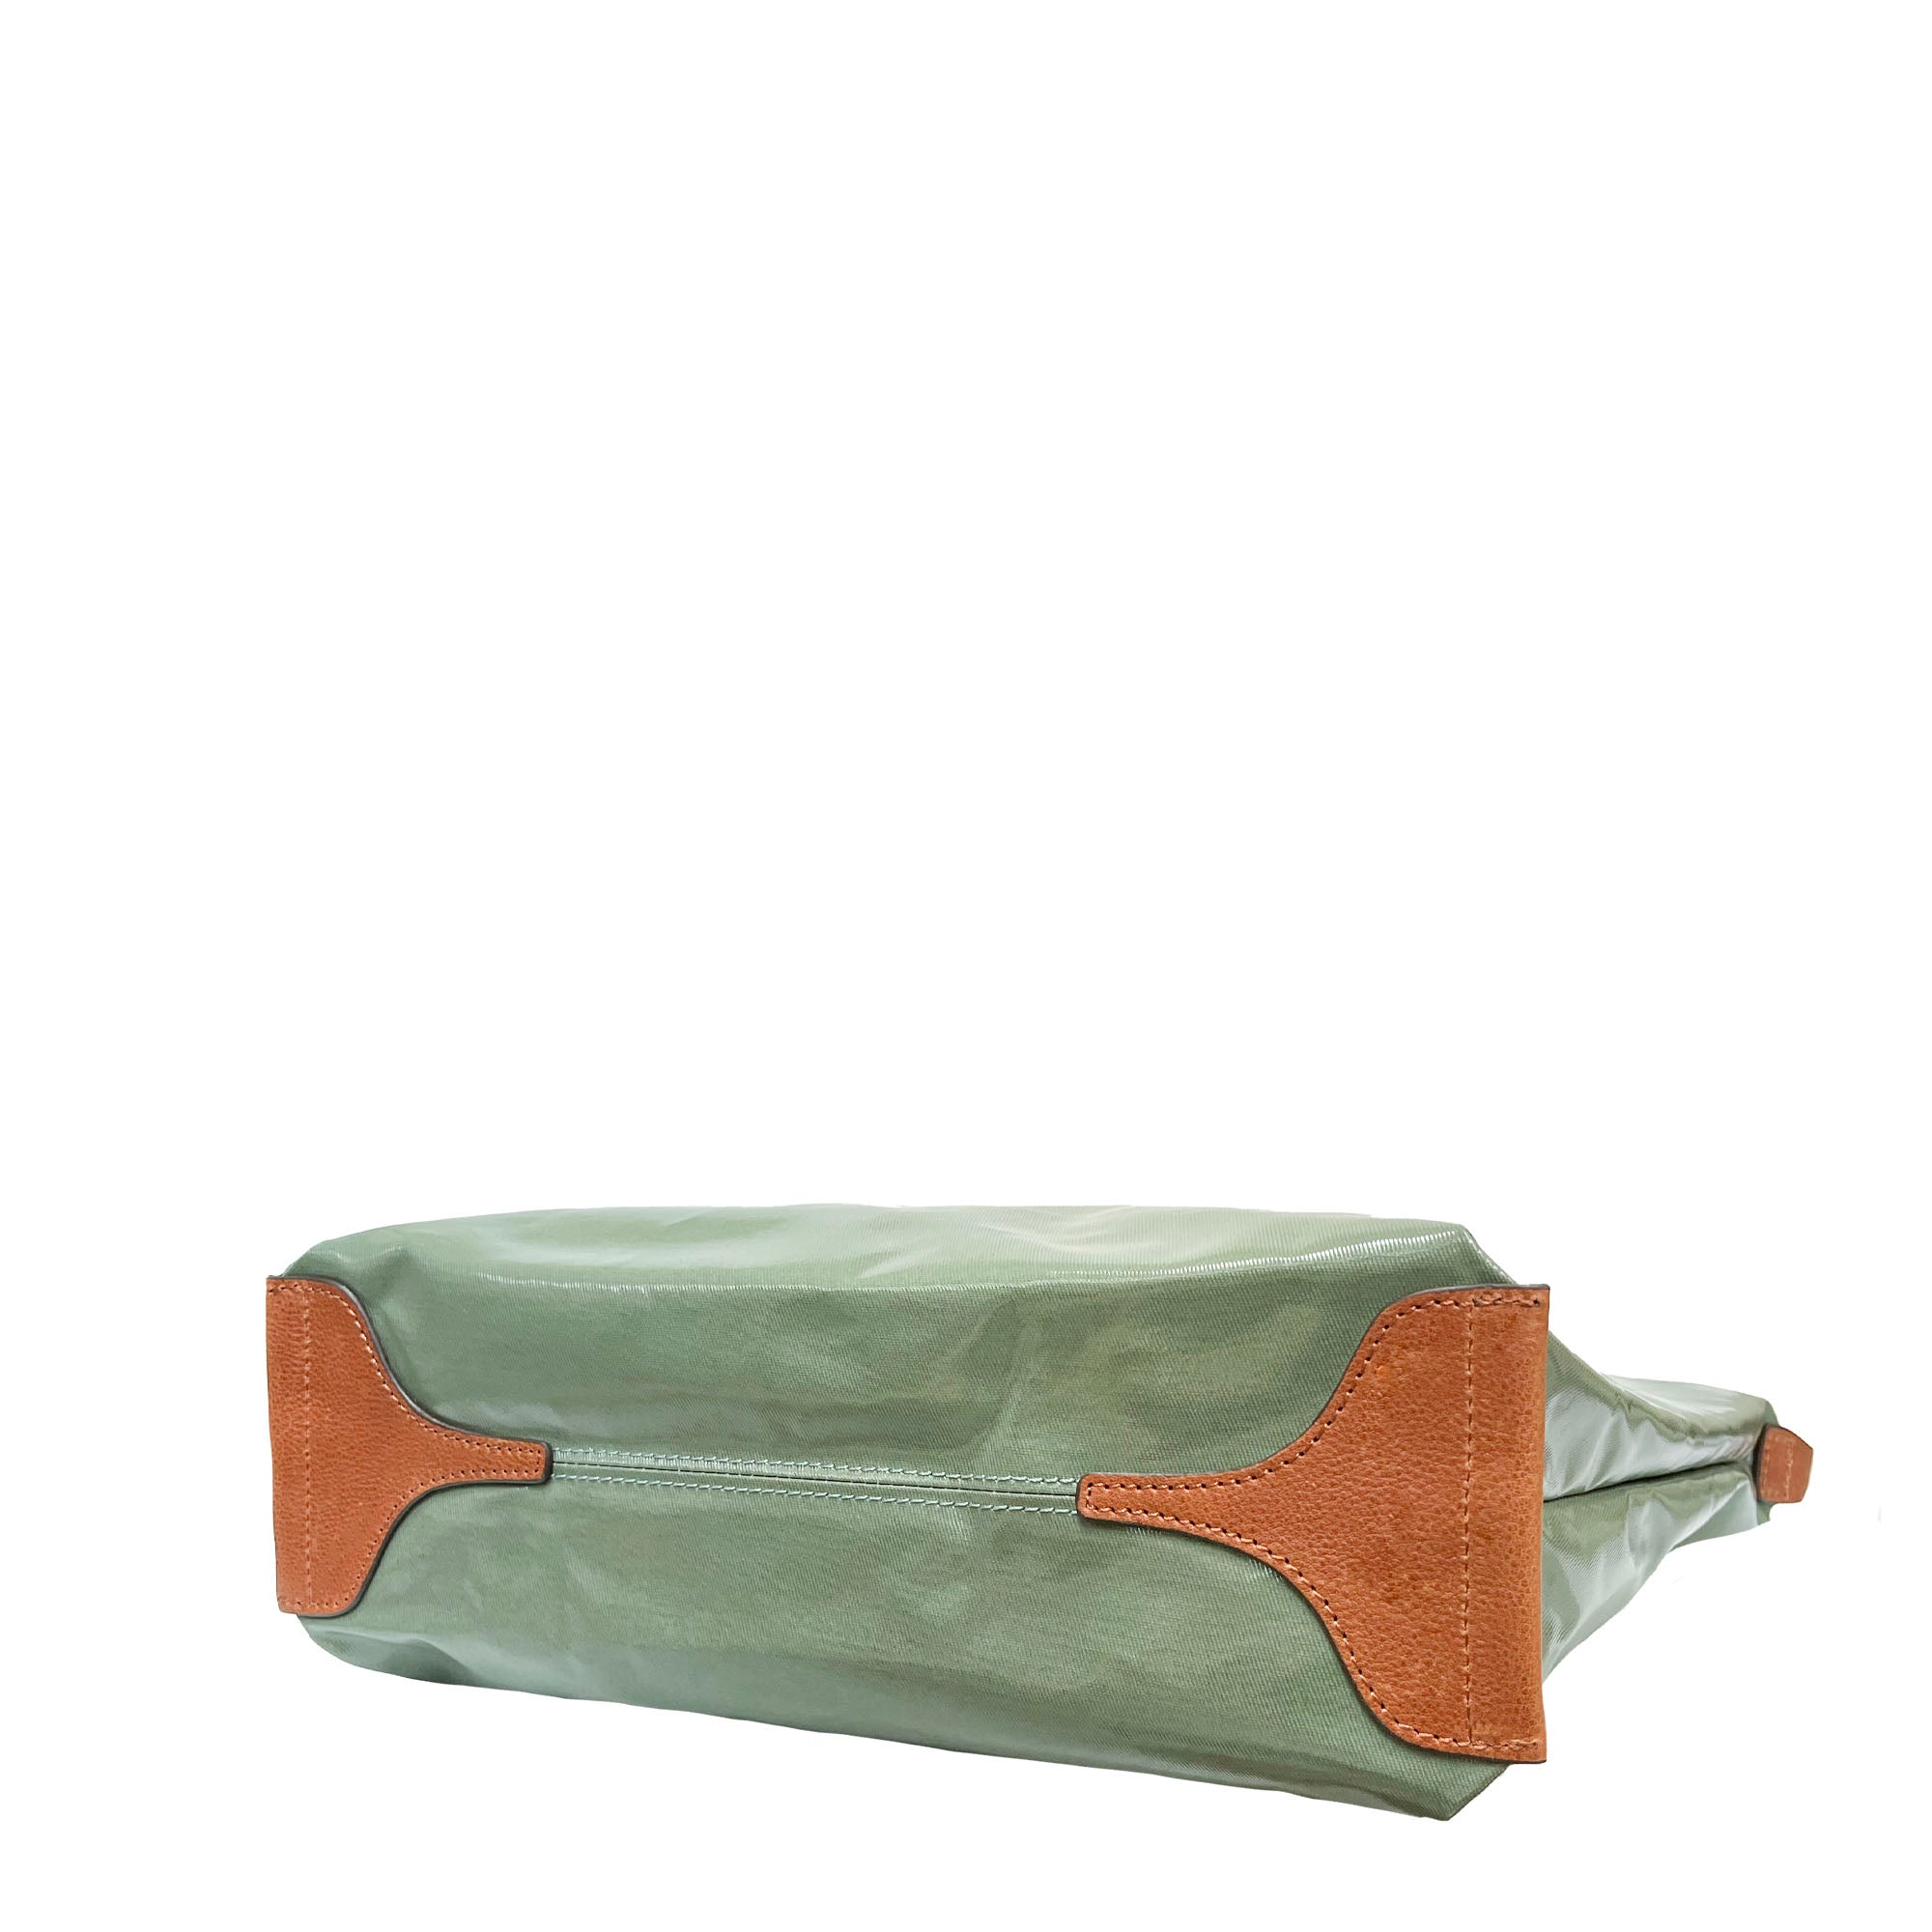 LIFE |  Waterproof Tote Bag (Sage Green)